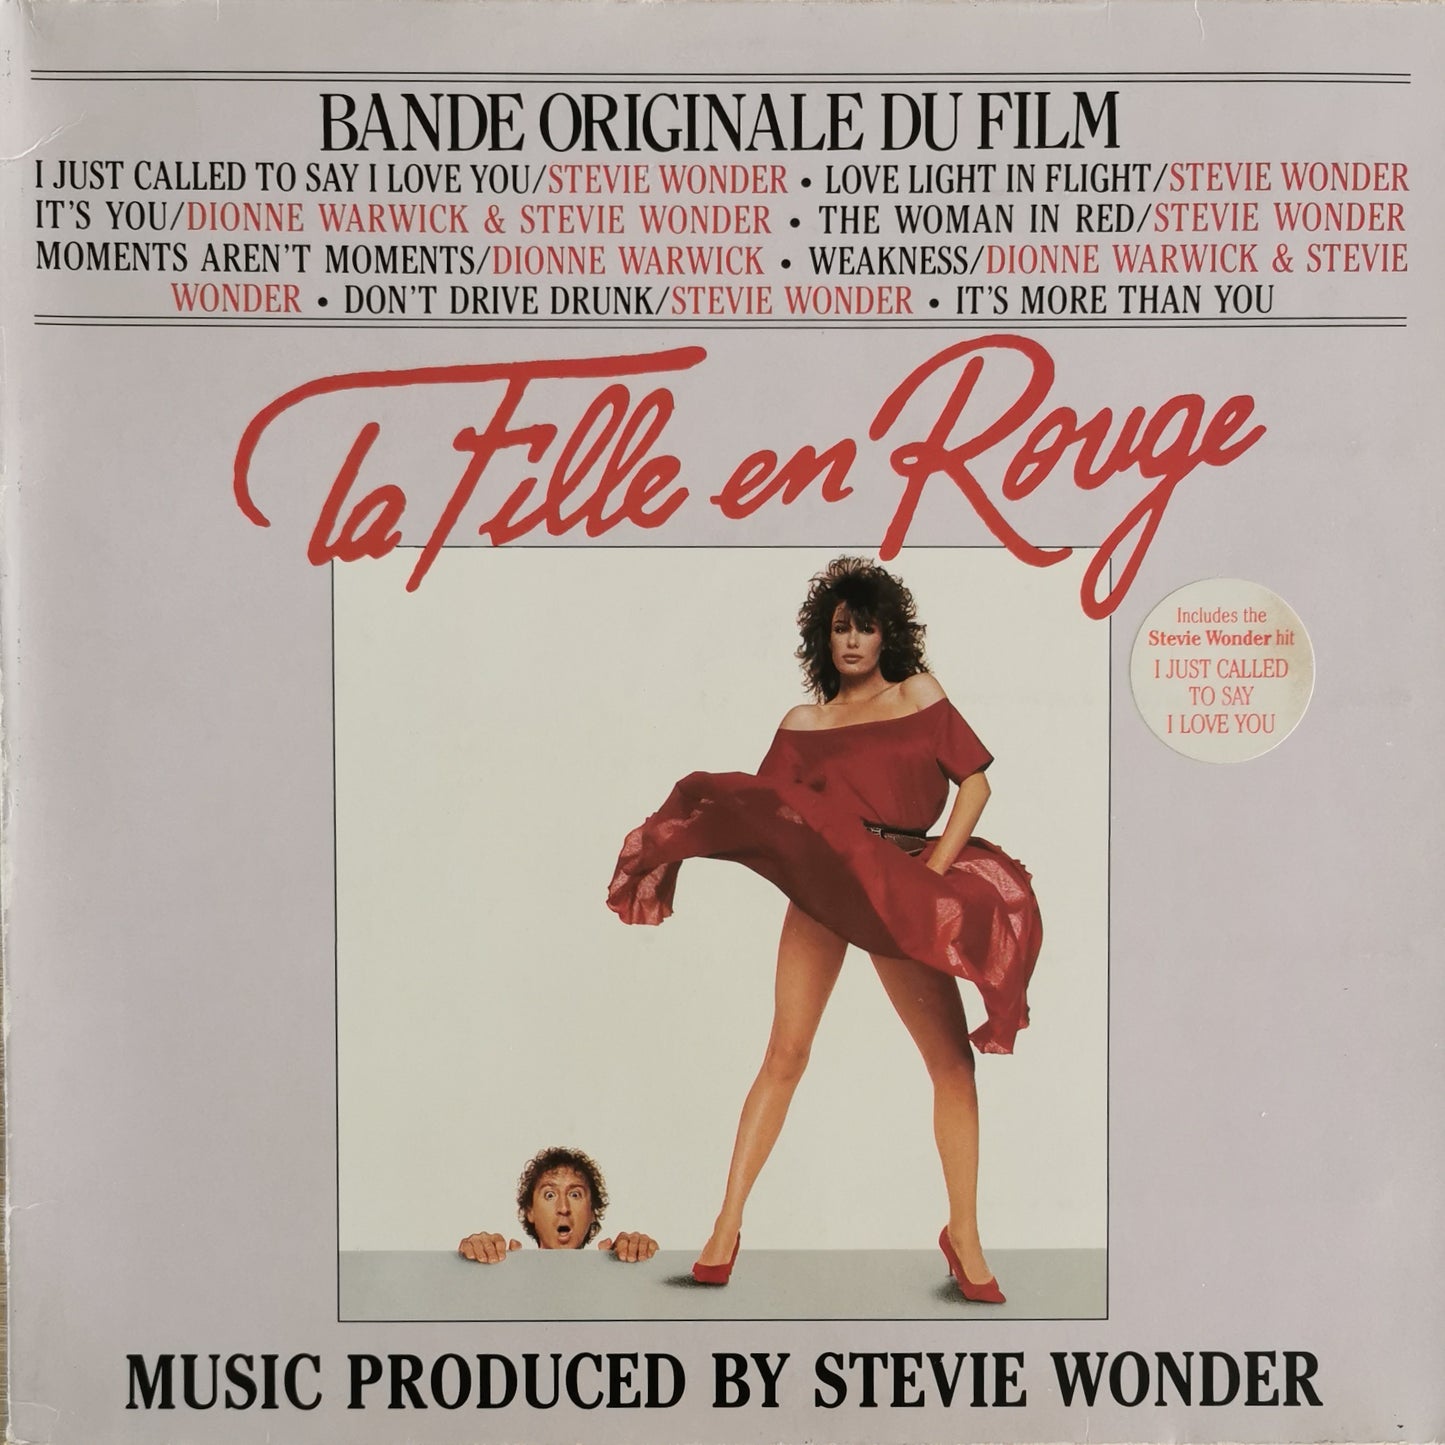 STEVIE WONDER - La Fille En Rouge (Bande Originale Du Film)